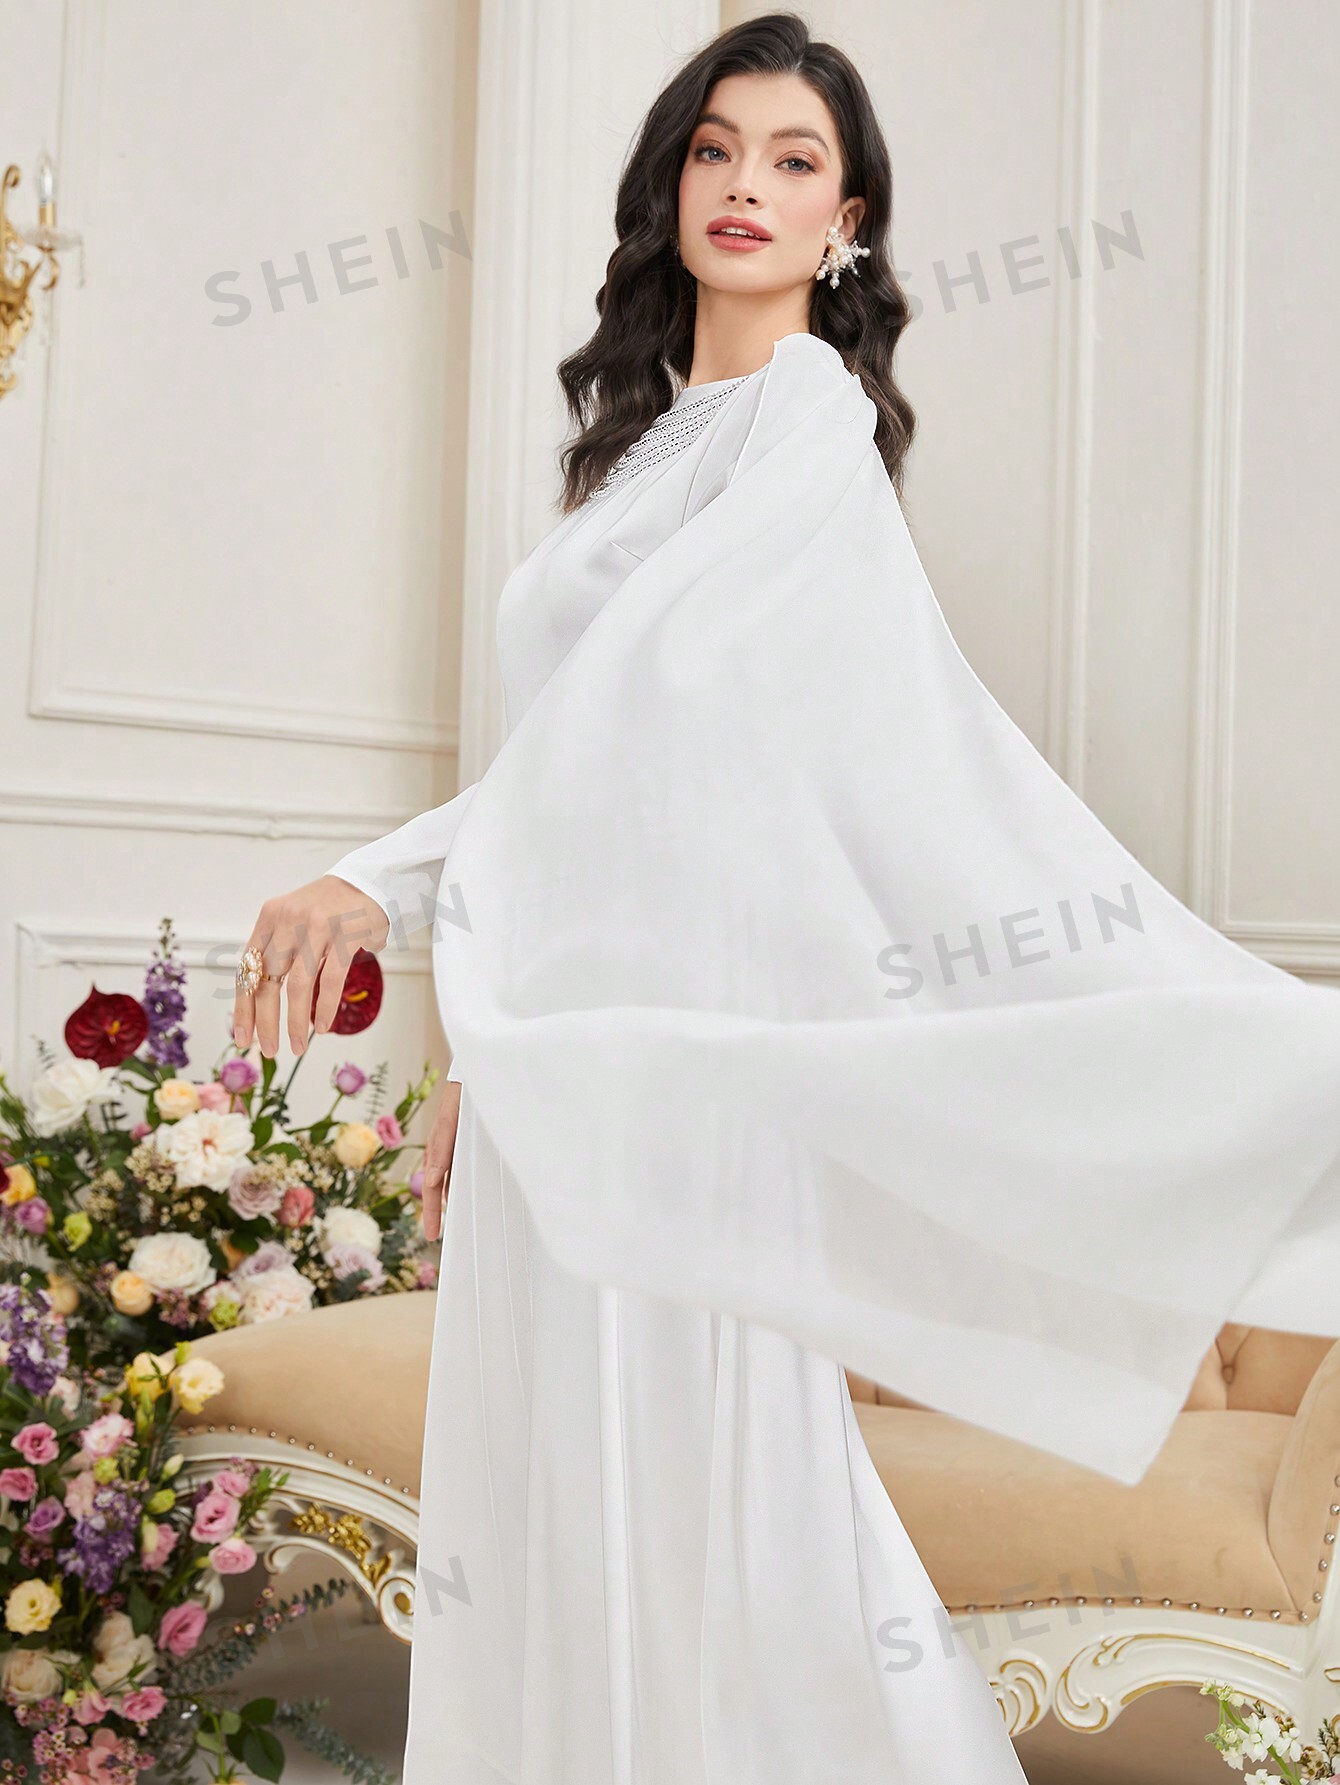 женское платье среднего востока мусульманское платье с капюшоном и бриллиантами платье в арабском стиле юго восточная азия весенняя мод SHEIN Modely женское платье-накидка в арабском стиле с пышными рукавами, белый